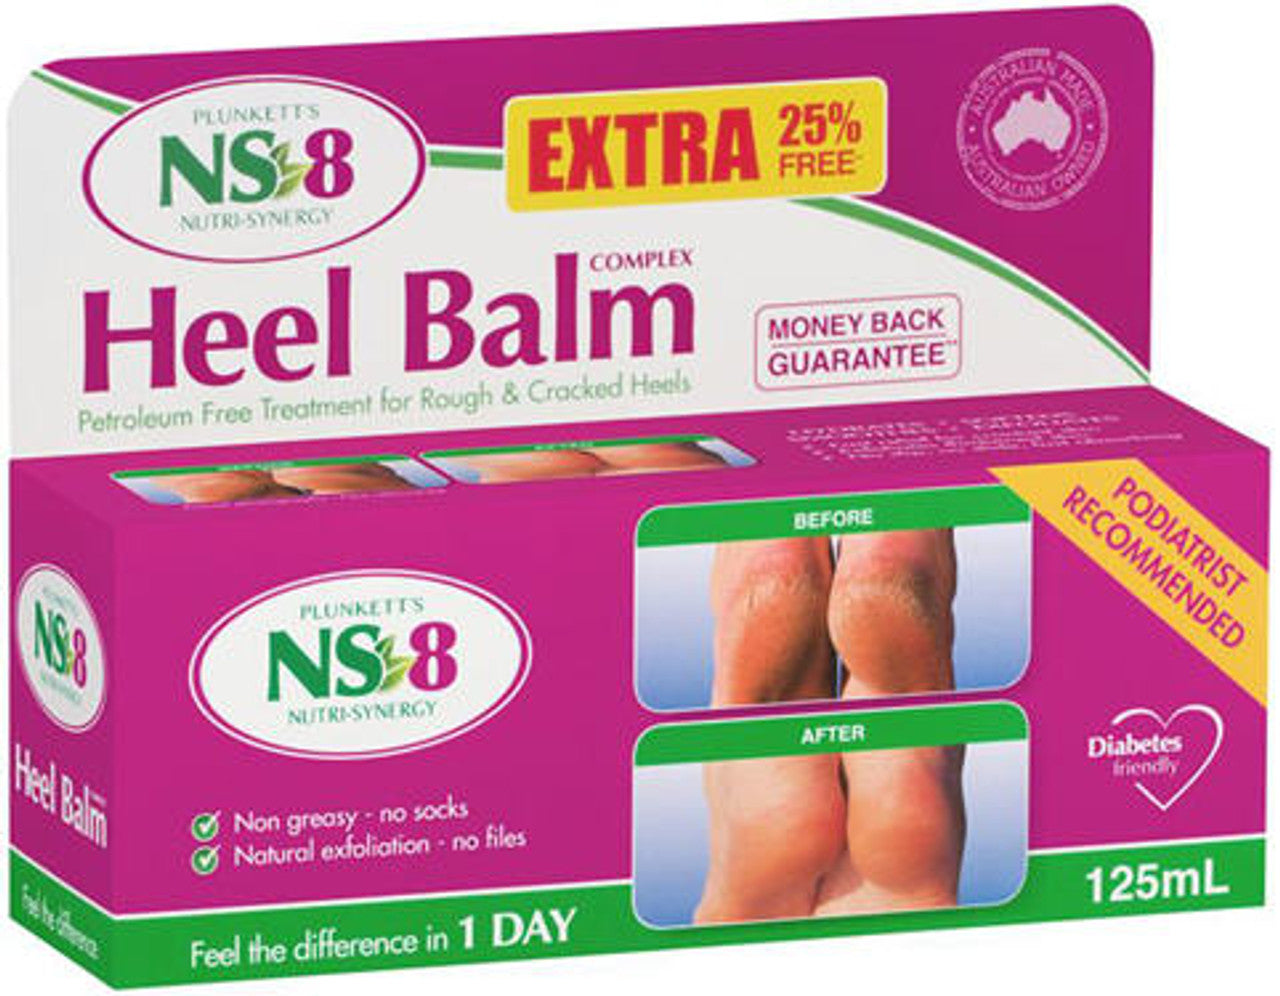 NS-8 Heel Balm Complex 60g + 25% Extra